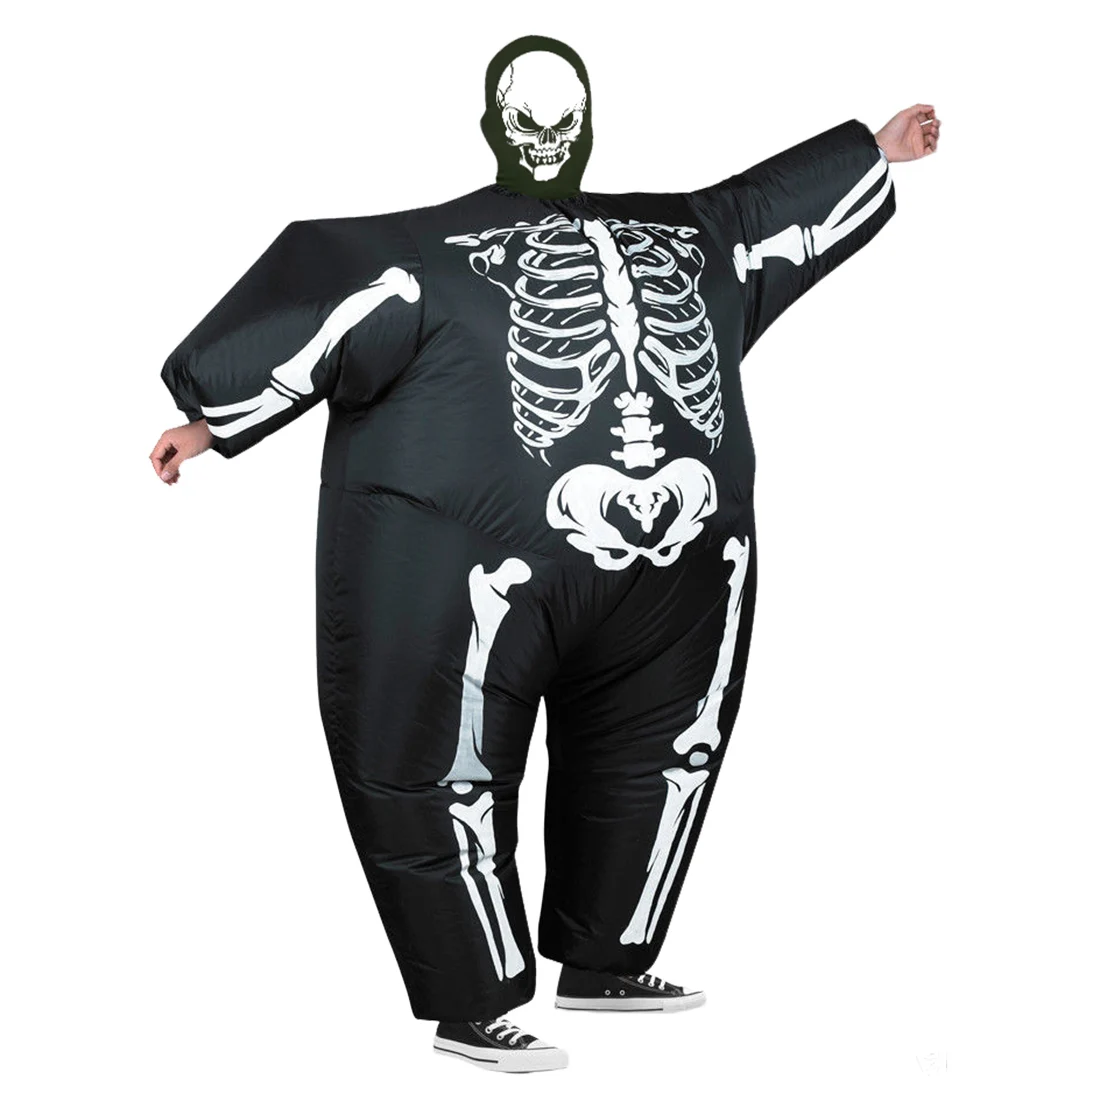 Хэллоуин надувной ужасный костюм езда на костюм наряд для косплея на Хэллоуин со скелетом-тыквой Одежда для взрослых